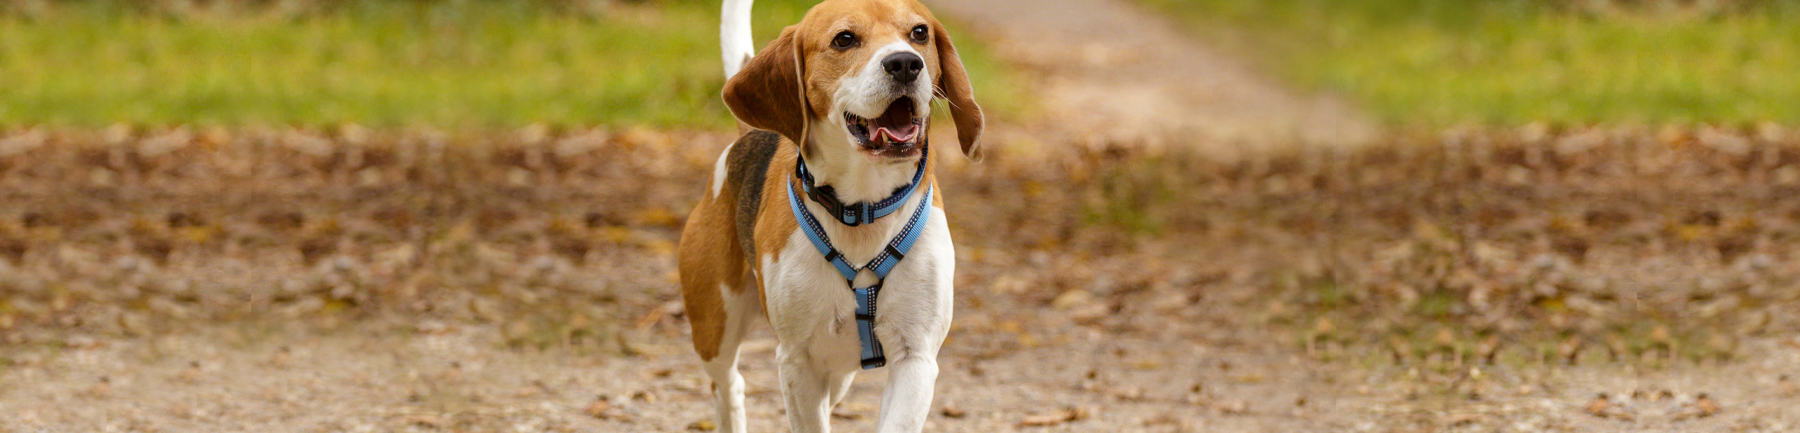 Happy Beagle walking in park wearing harness